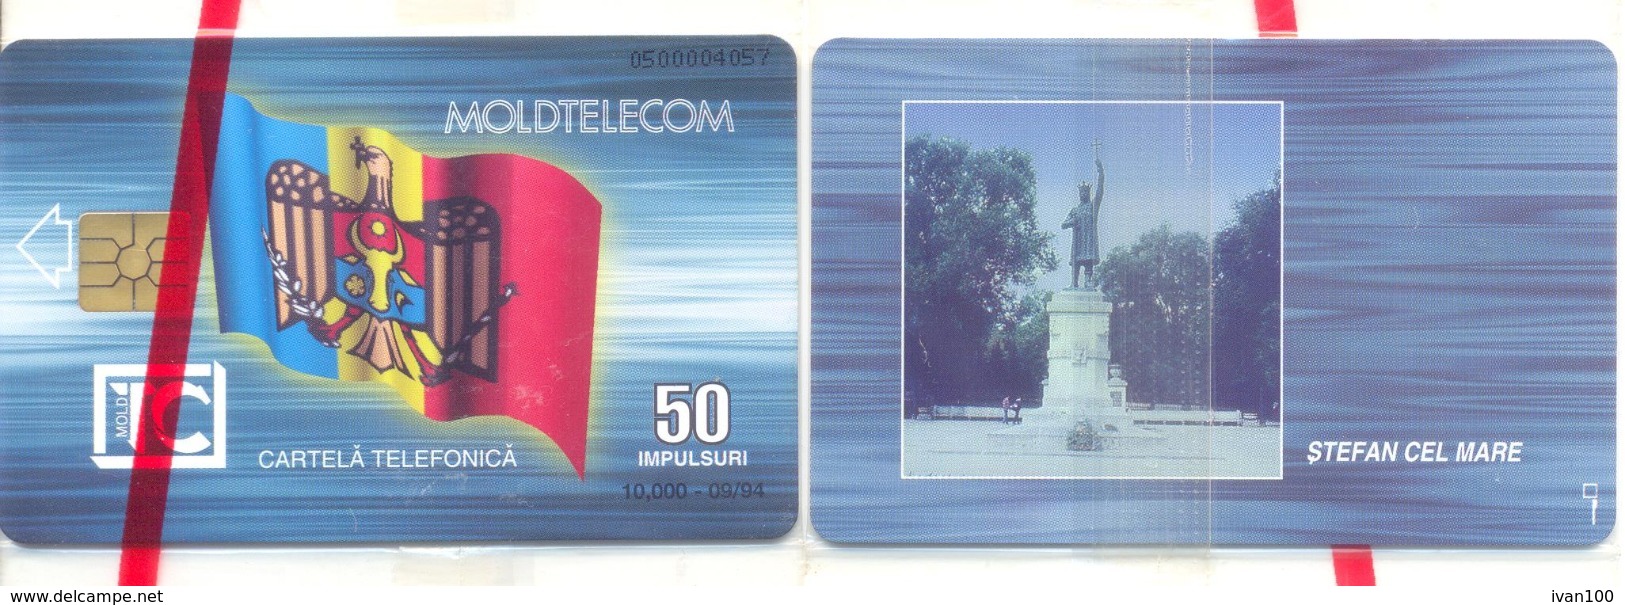 1994. Moldova - CHIP - 50 IMP, 09/1994, RR BLISTER - Moldavie